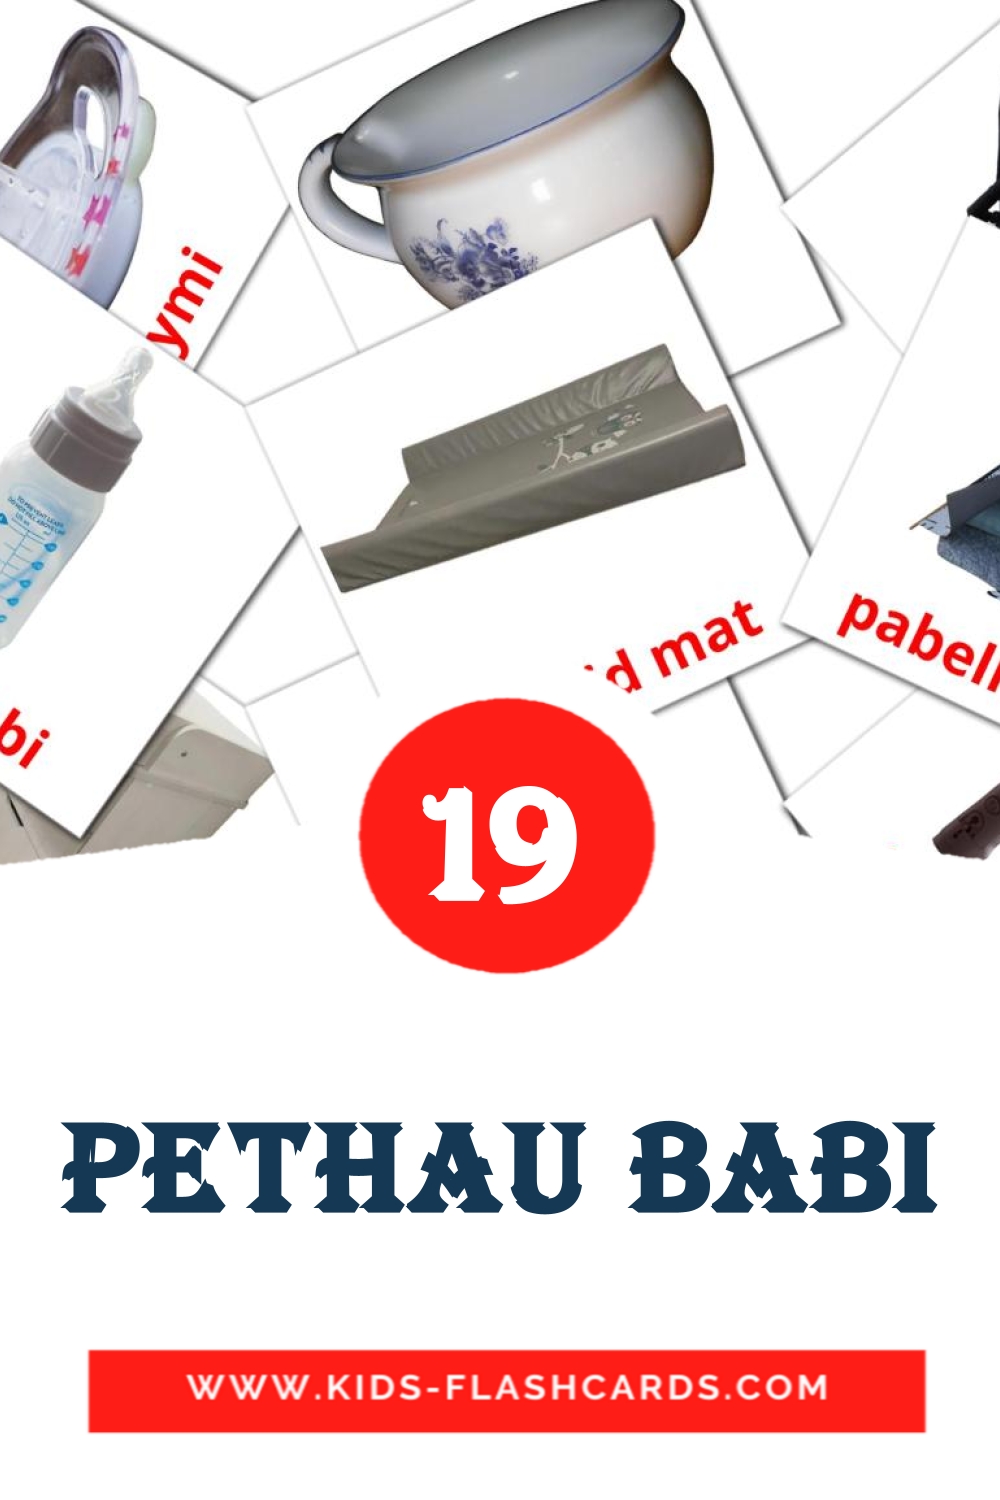 19 Cartões com Imagens de Pethau babi para Jardim de Infância em welsh